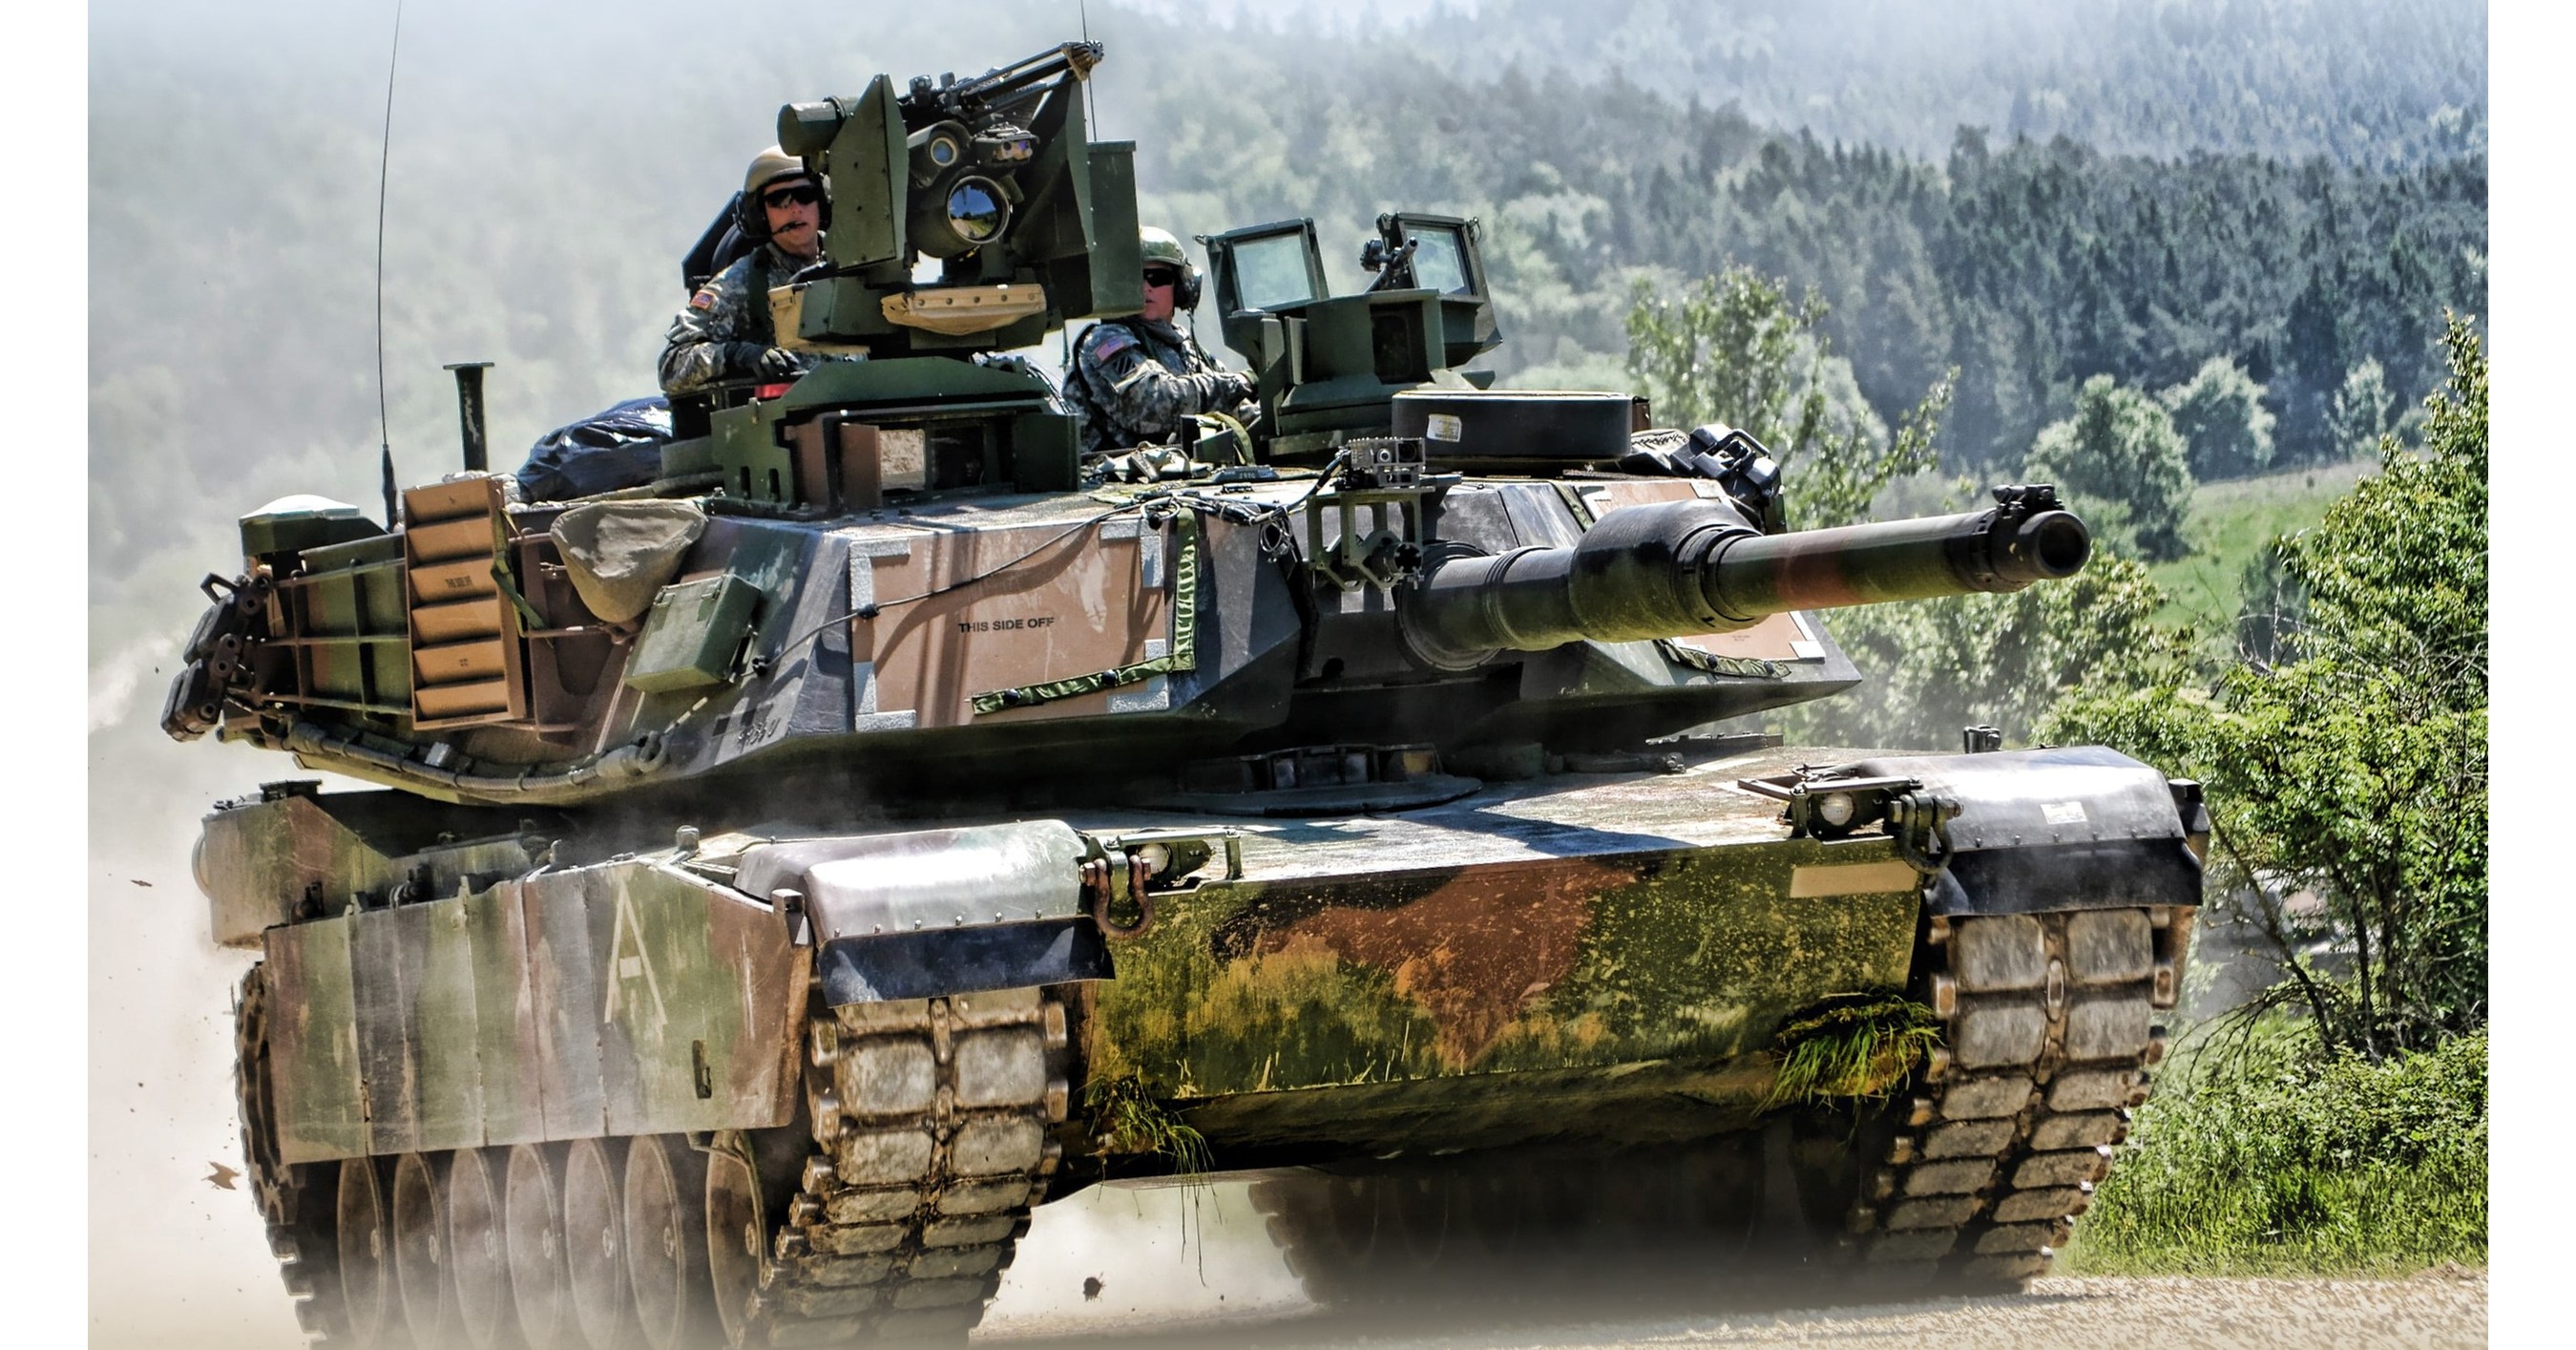 General Dynamics Land Systems dostarcza czołgi Abrams do Polski w ramach zamówienia na sprzedaż zagranicznego sprzętu wojskowego o wartości 1,1 miliarda USD